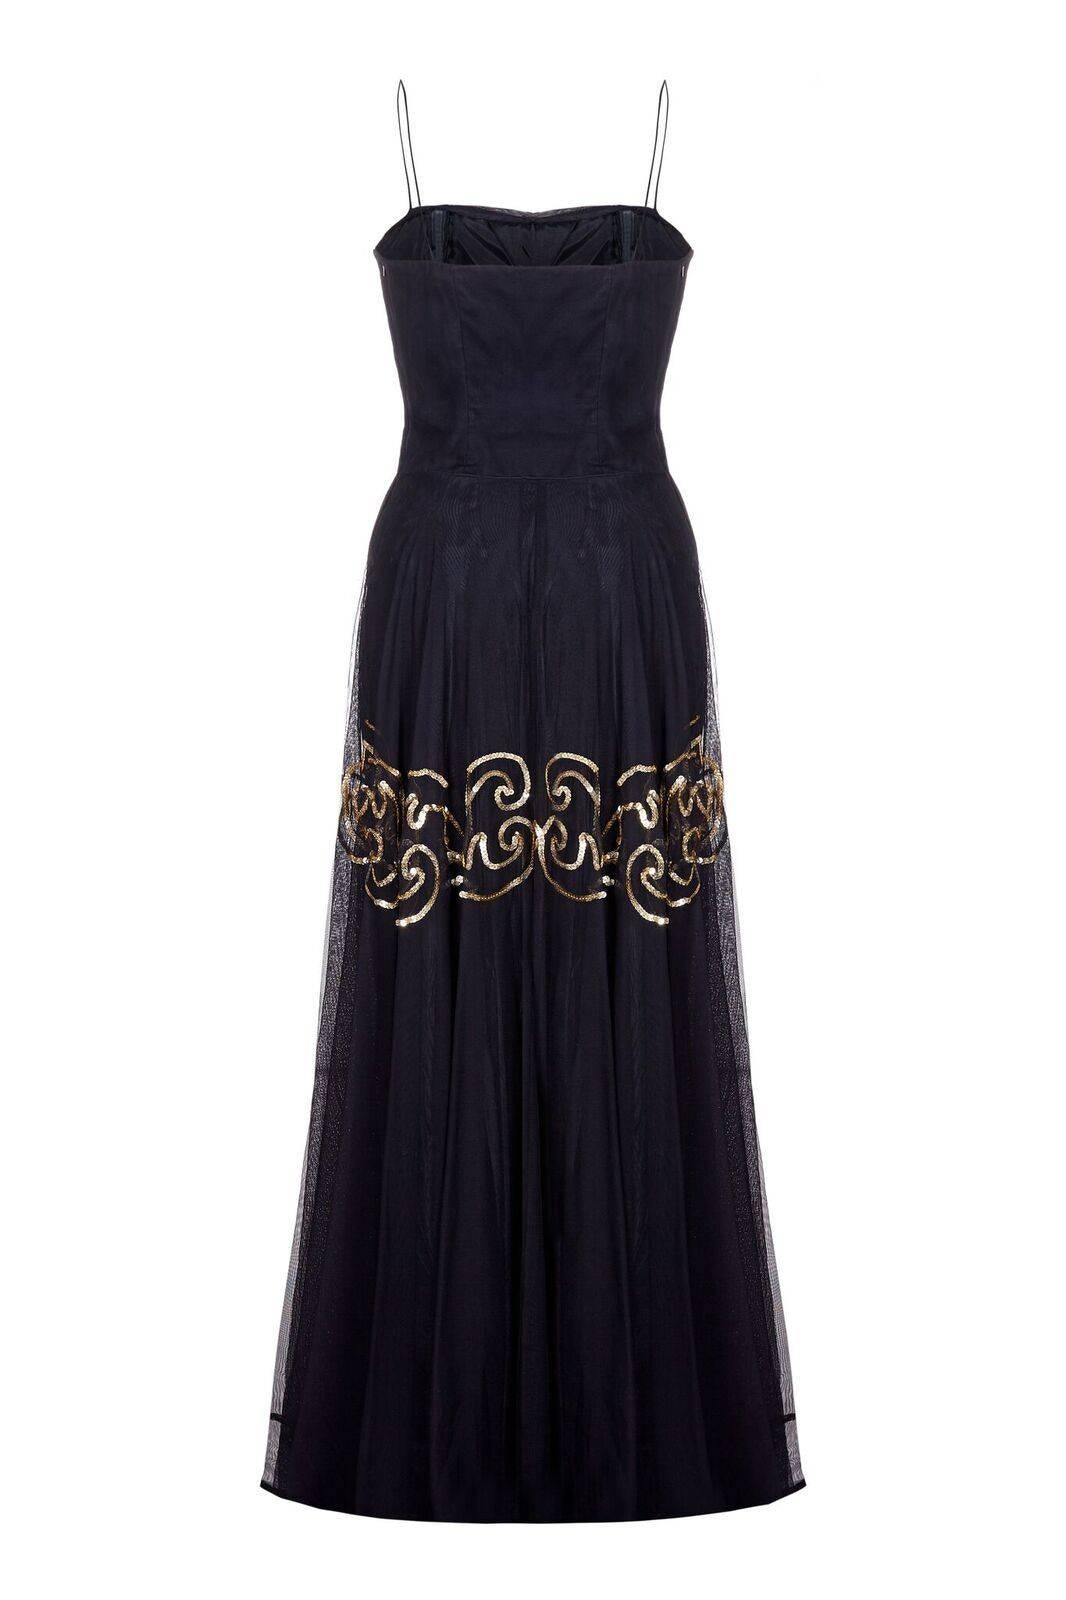 Cette superbe robe de soirée en mousseline de soie noire de Fred, datant de la fin des années 1940 ou du début des années 1950, avec gants assortis, est conçue pour faire tourner les têtes sur la piste de danse. Cette pièce fait partie de la gamme